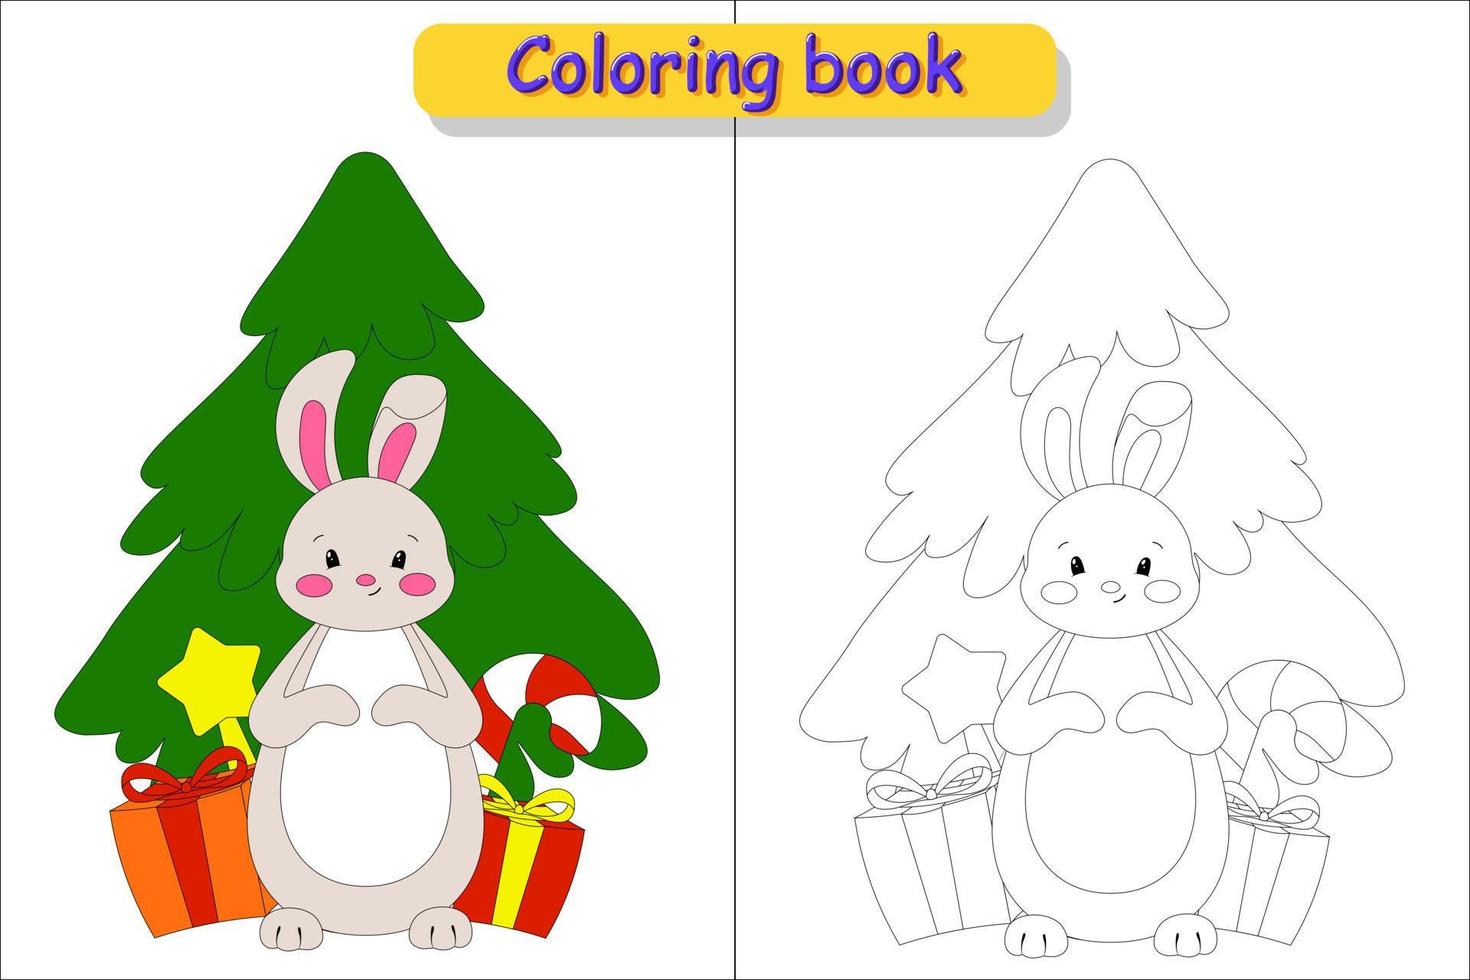 livro de colorir infantil árvore de natal, coelho e imagens de presentes em cores e sem cores vetor